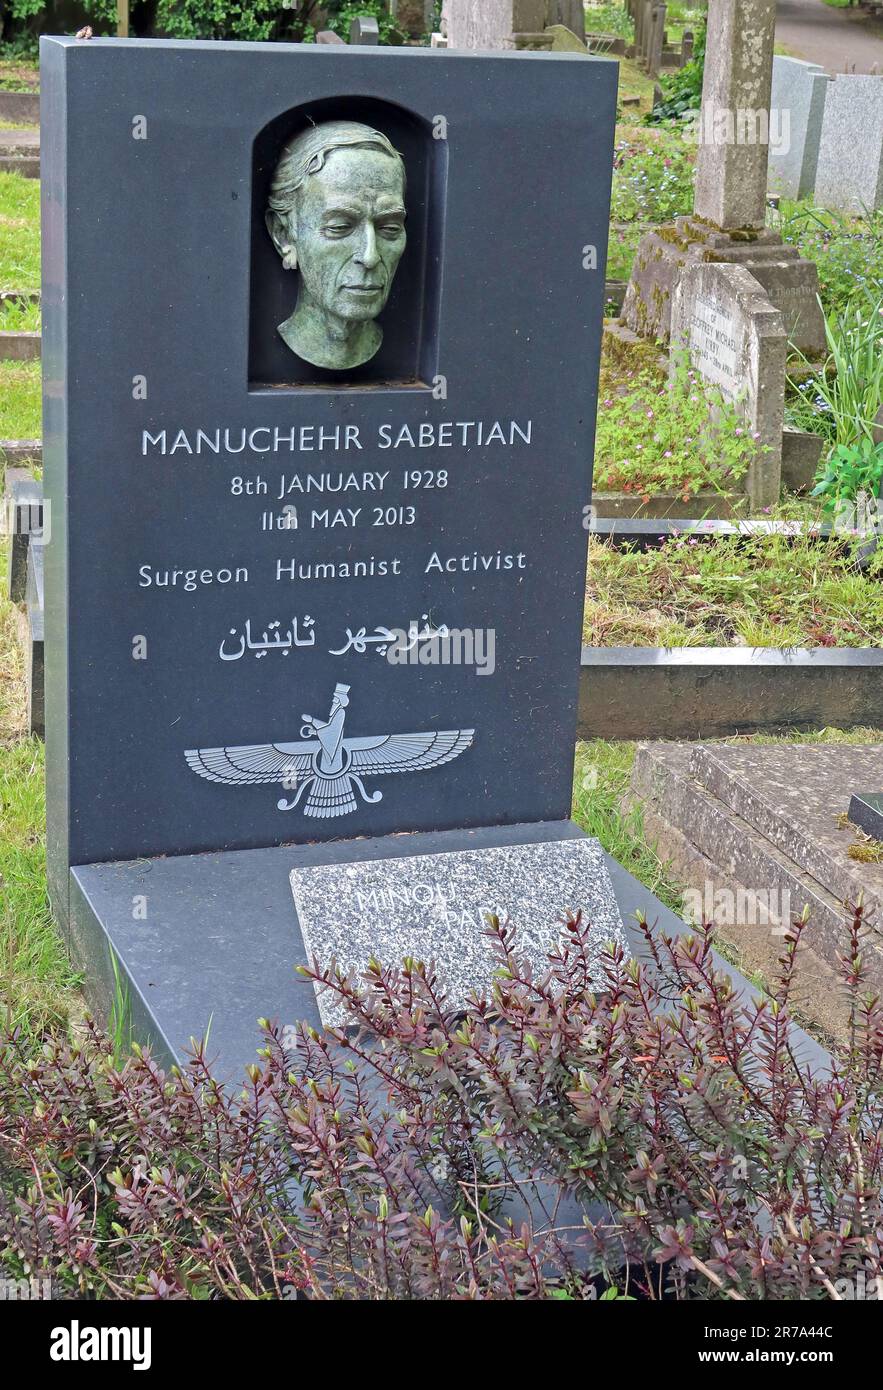 Tombe de Manuchehr Sabetian, chirurgien-conseil iranien, enterrée dans le cimetière de Highgate, Londres, Swain's Lane, N6 6PJ Banque D'Images